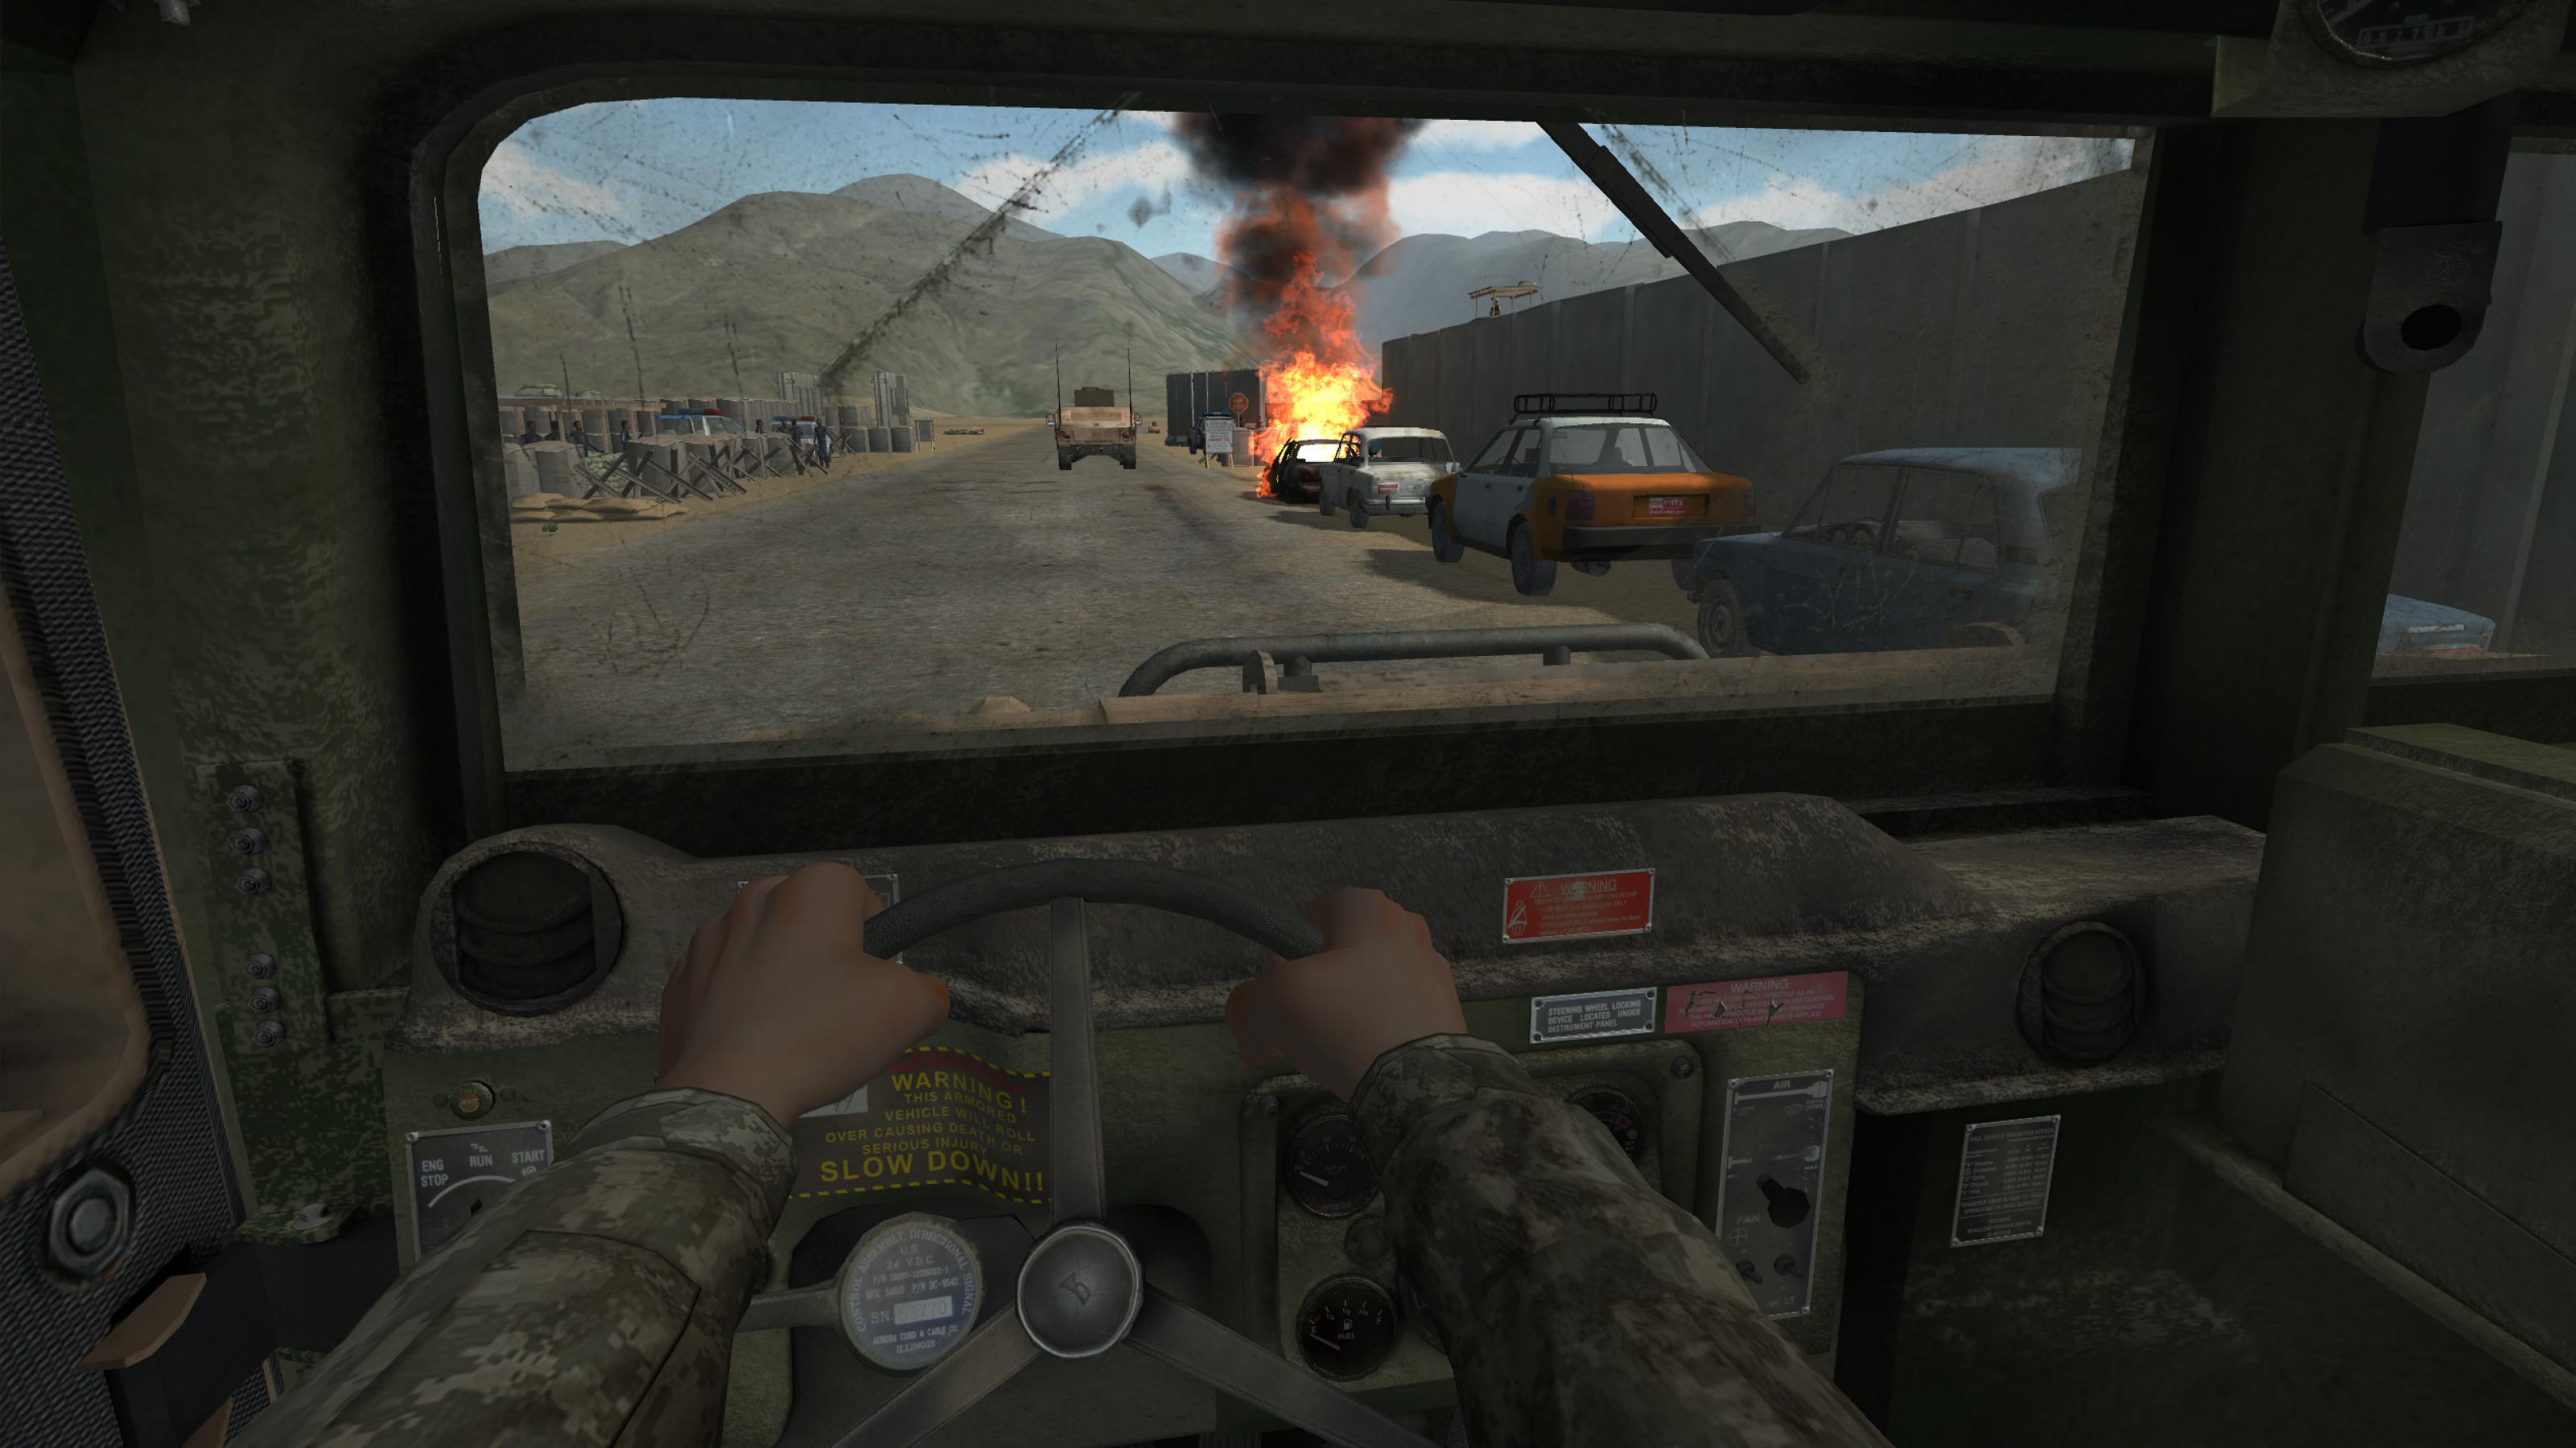 Simulation einer Kriegsszene im Computer: Man blickt aus der Ich-Perspektive hinaus aus einem Militärfahrzeug auf eine staubige Straße eines afghanischen Dorfes.. Am rechten Fahrbahnrand parken mehrere alte Autos. Eines davon brennt lichterloh. Im Hintergrund ragen mehrere Berge über das triste Landschaftsbild empor.